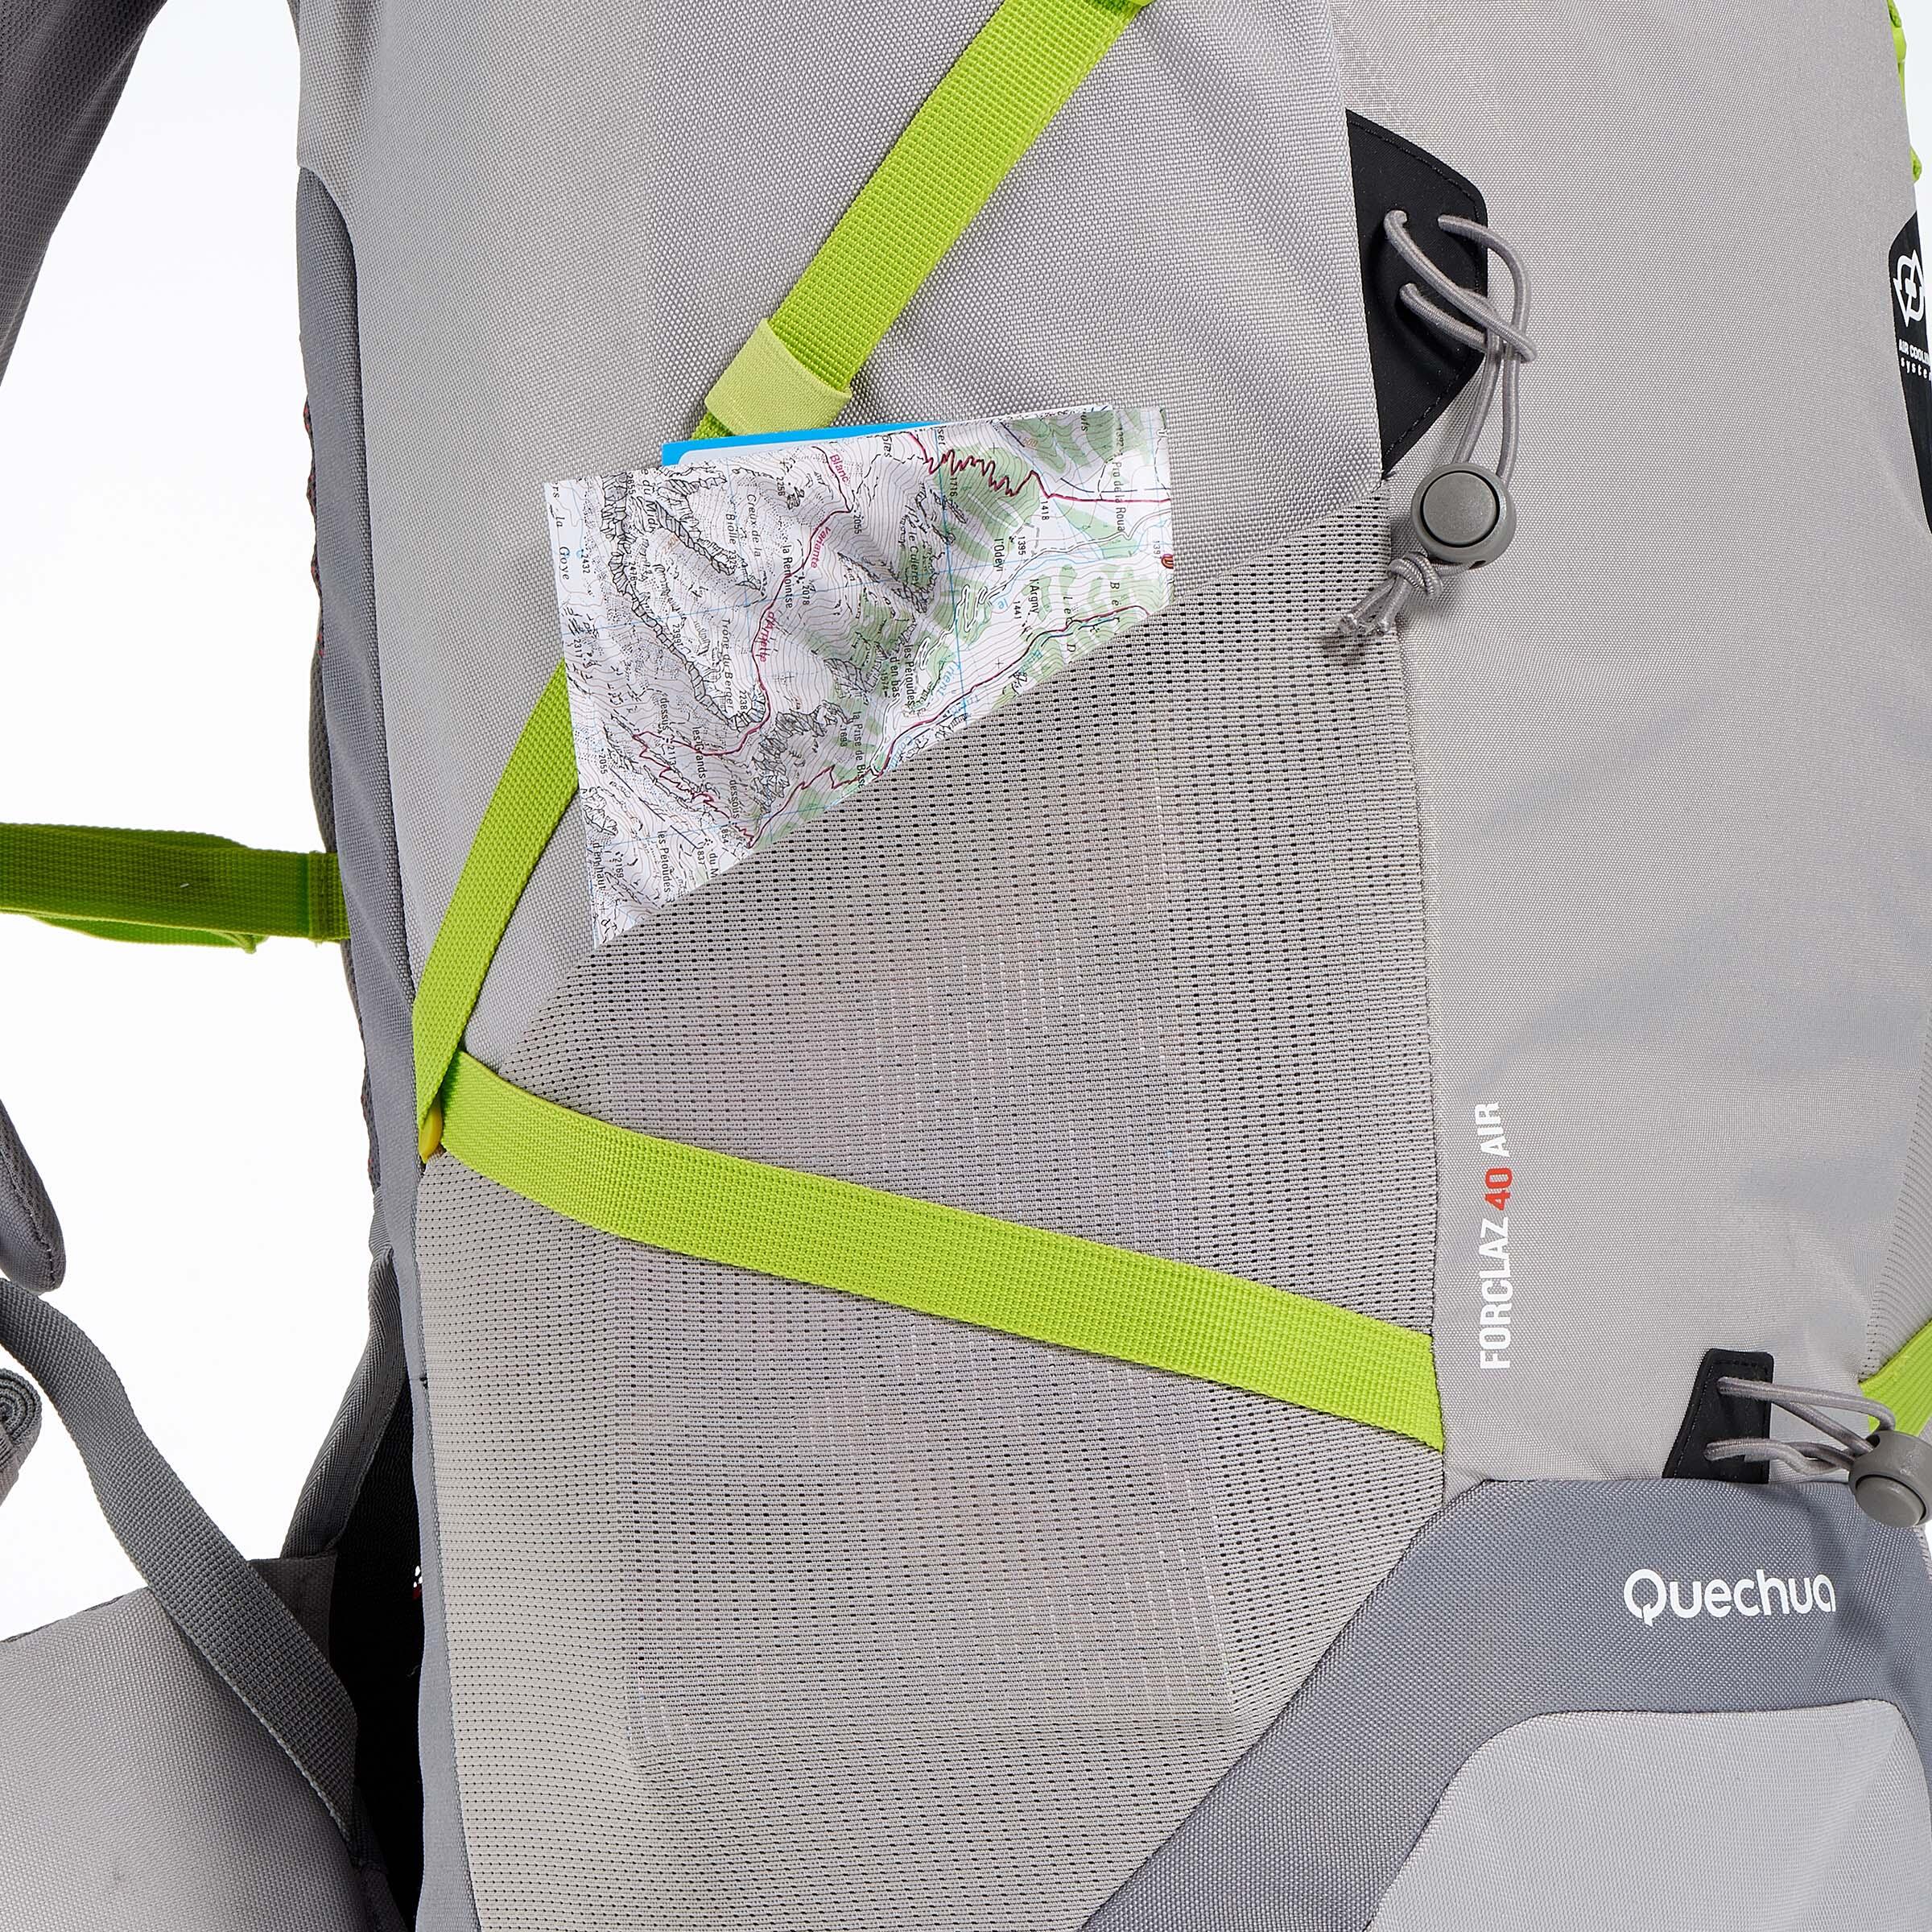 FORCLAZ 40 AIR backpack BLUE: AIR COOLING Label - regulates back perspiration 16/19